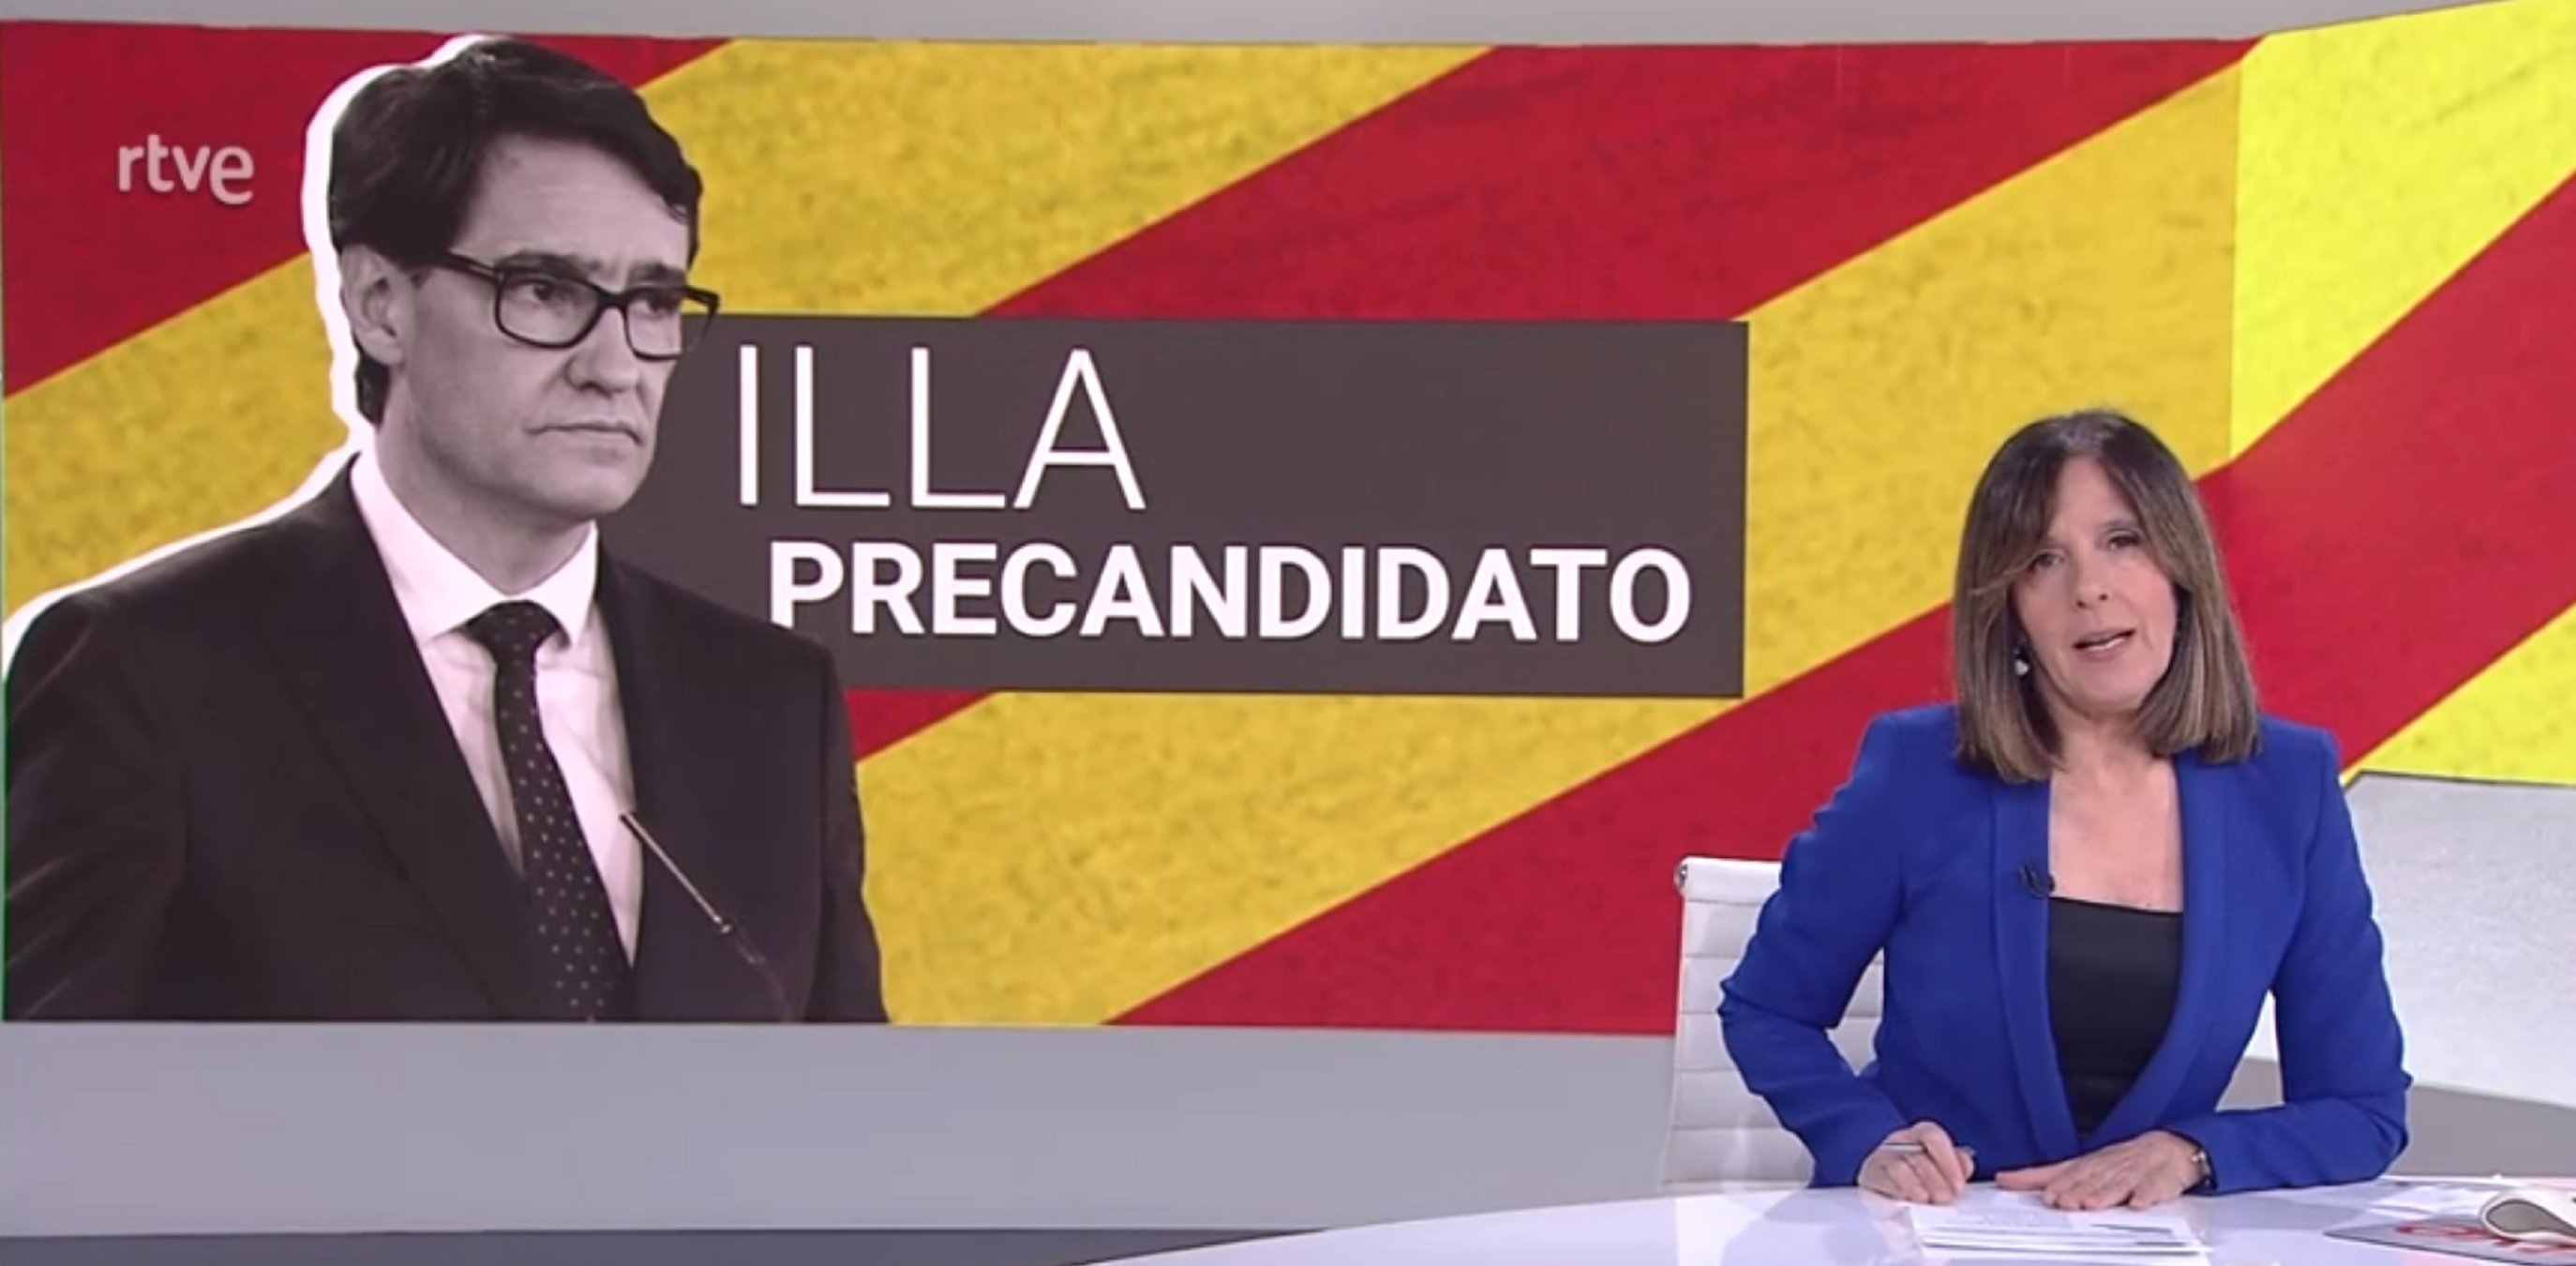 TVE asocia vacunas y "vota PSC" en un vídeo vergonzoso. Cañas exlota "¡Es TV3!"